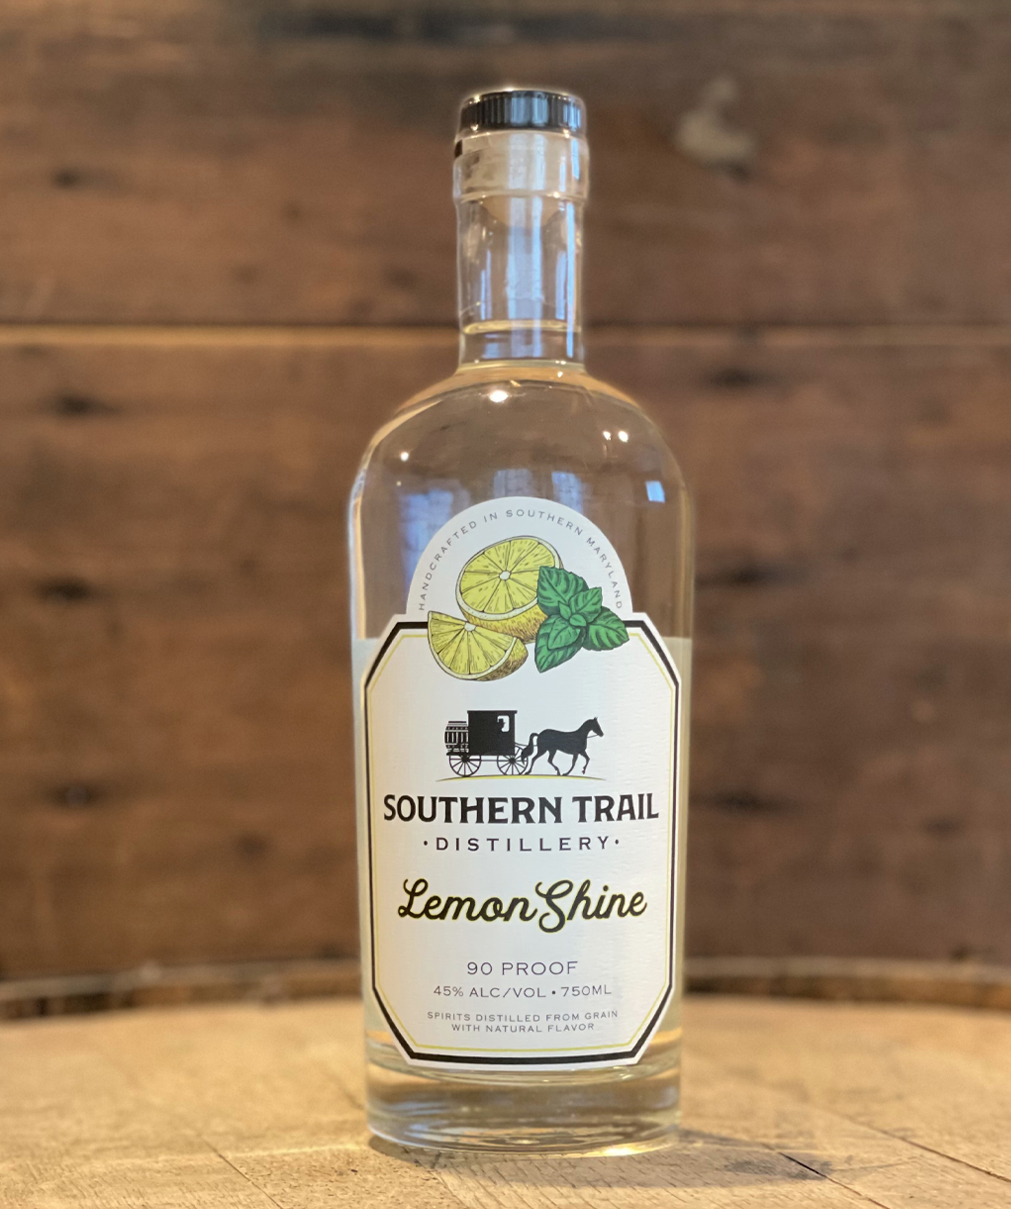 Lemon Shine Southern Trail Distillery